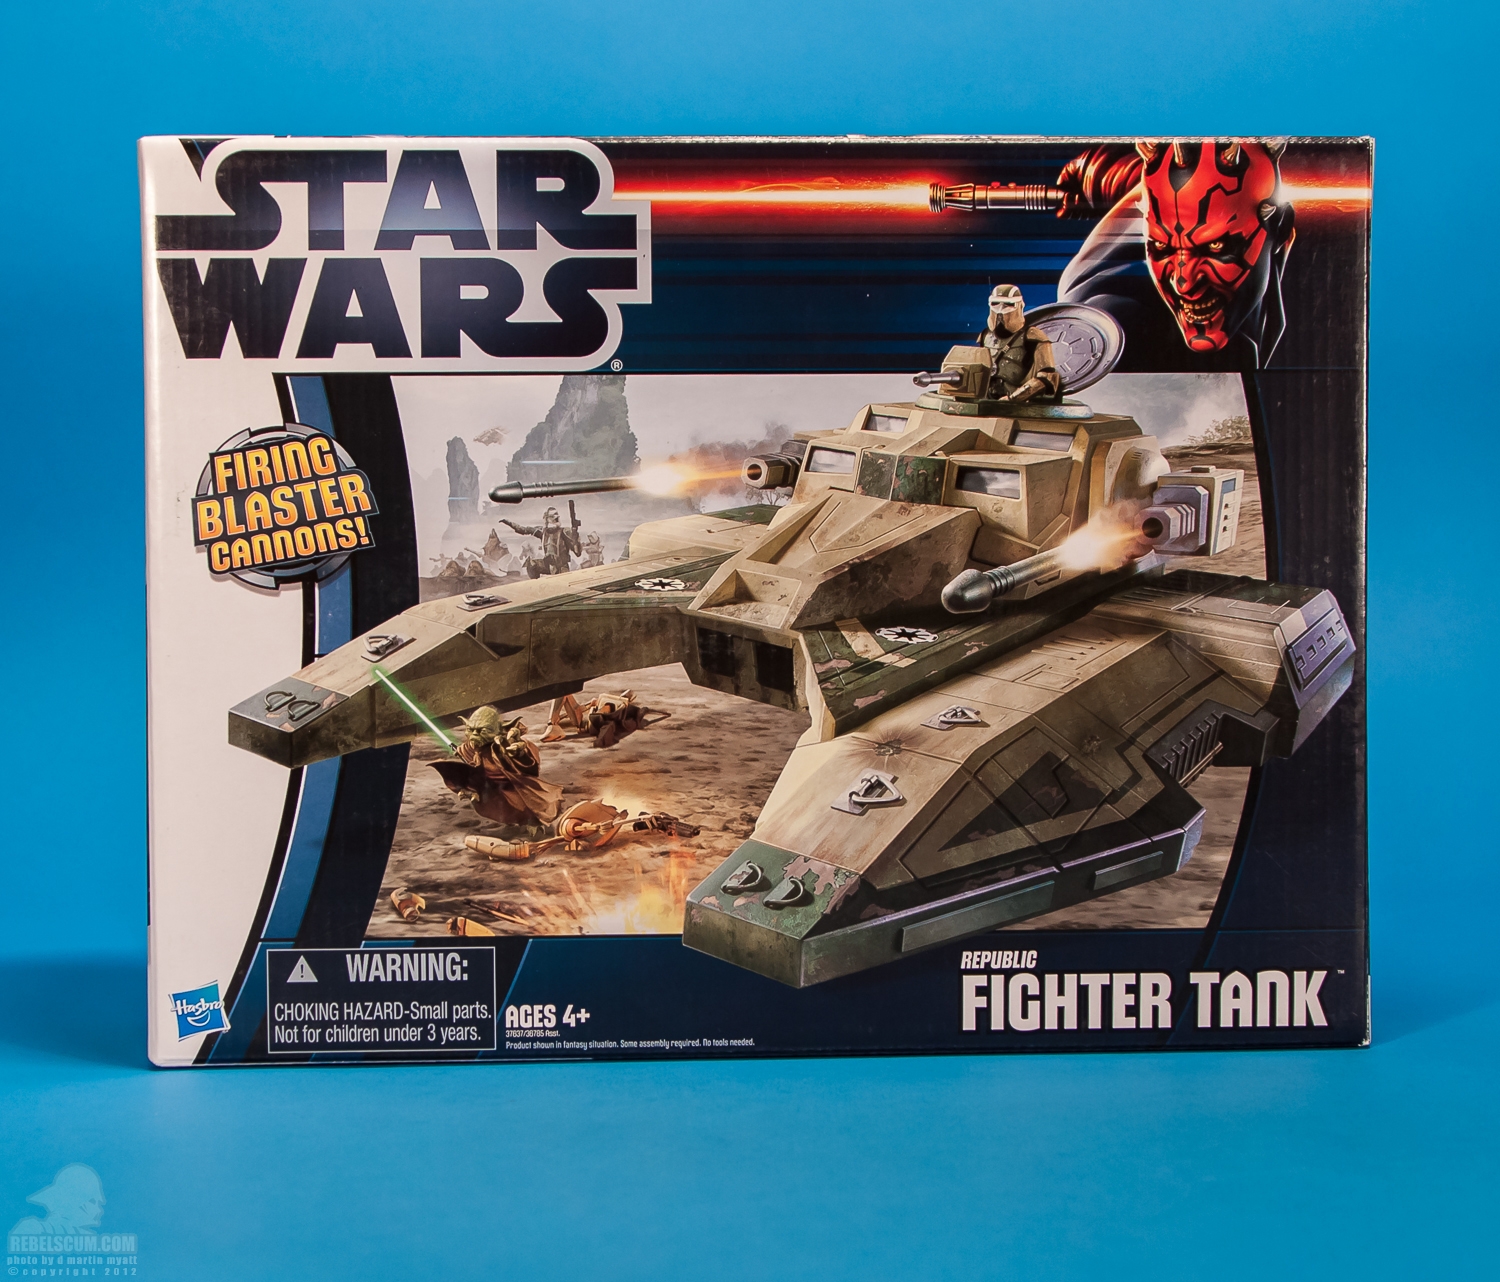 Republic_Fighter_Tank_Movie_Heroes_Star_Wars_Vehicle_Hasbro-16.jpg